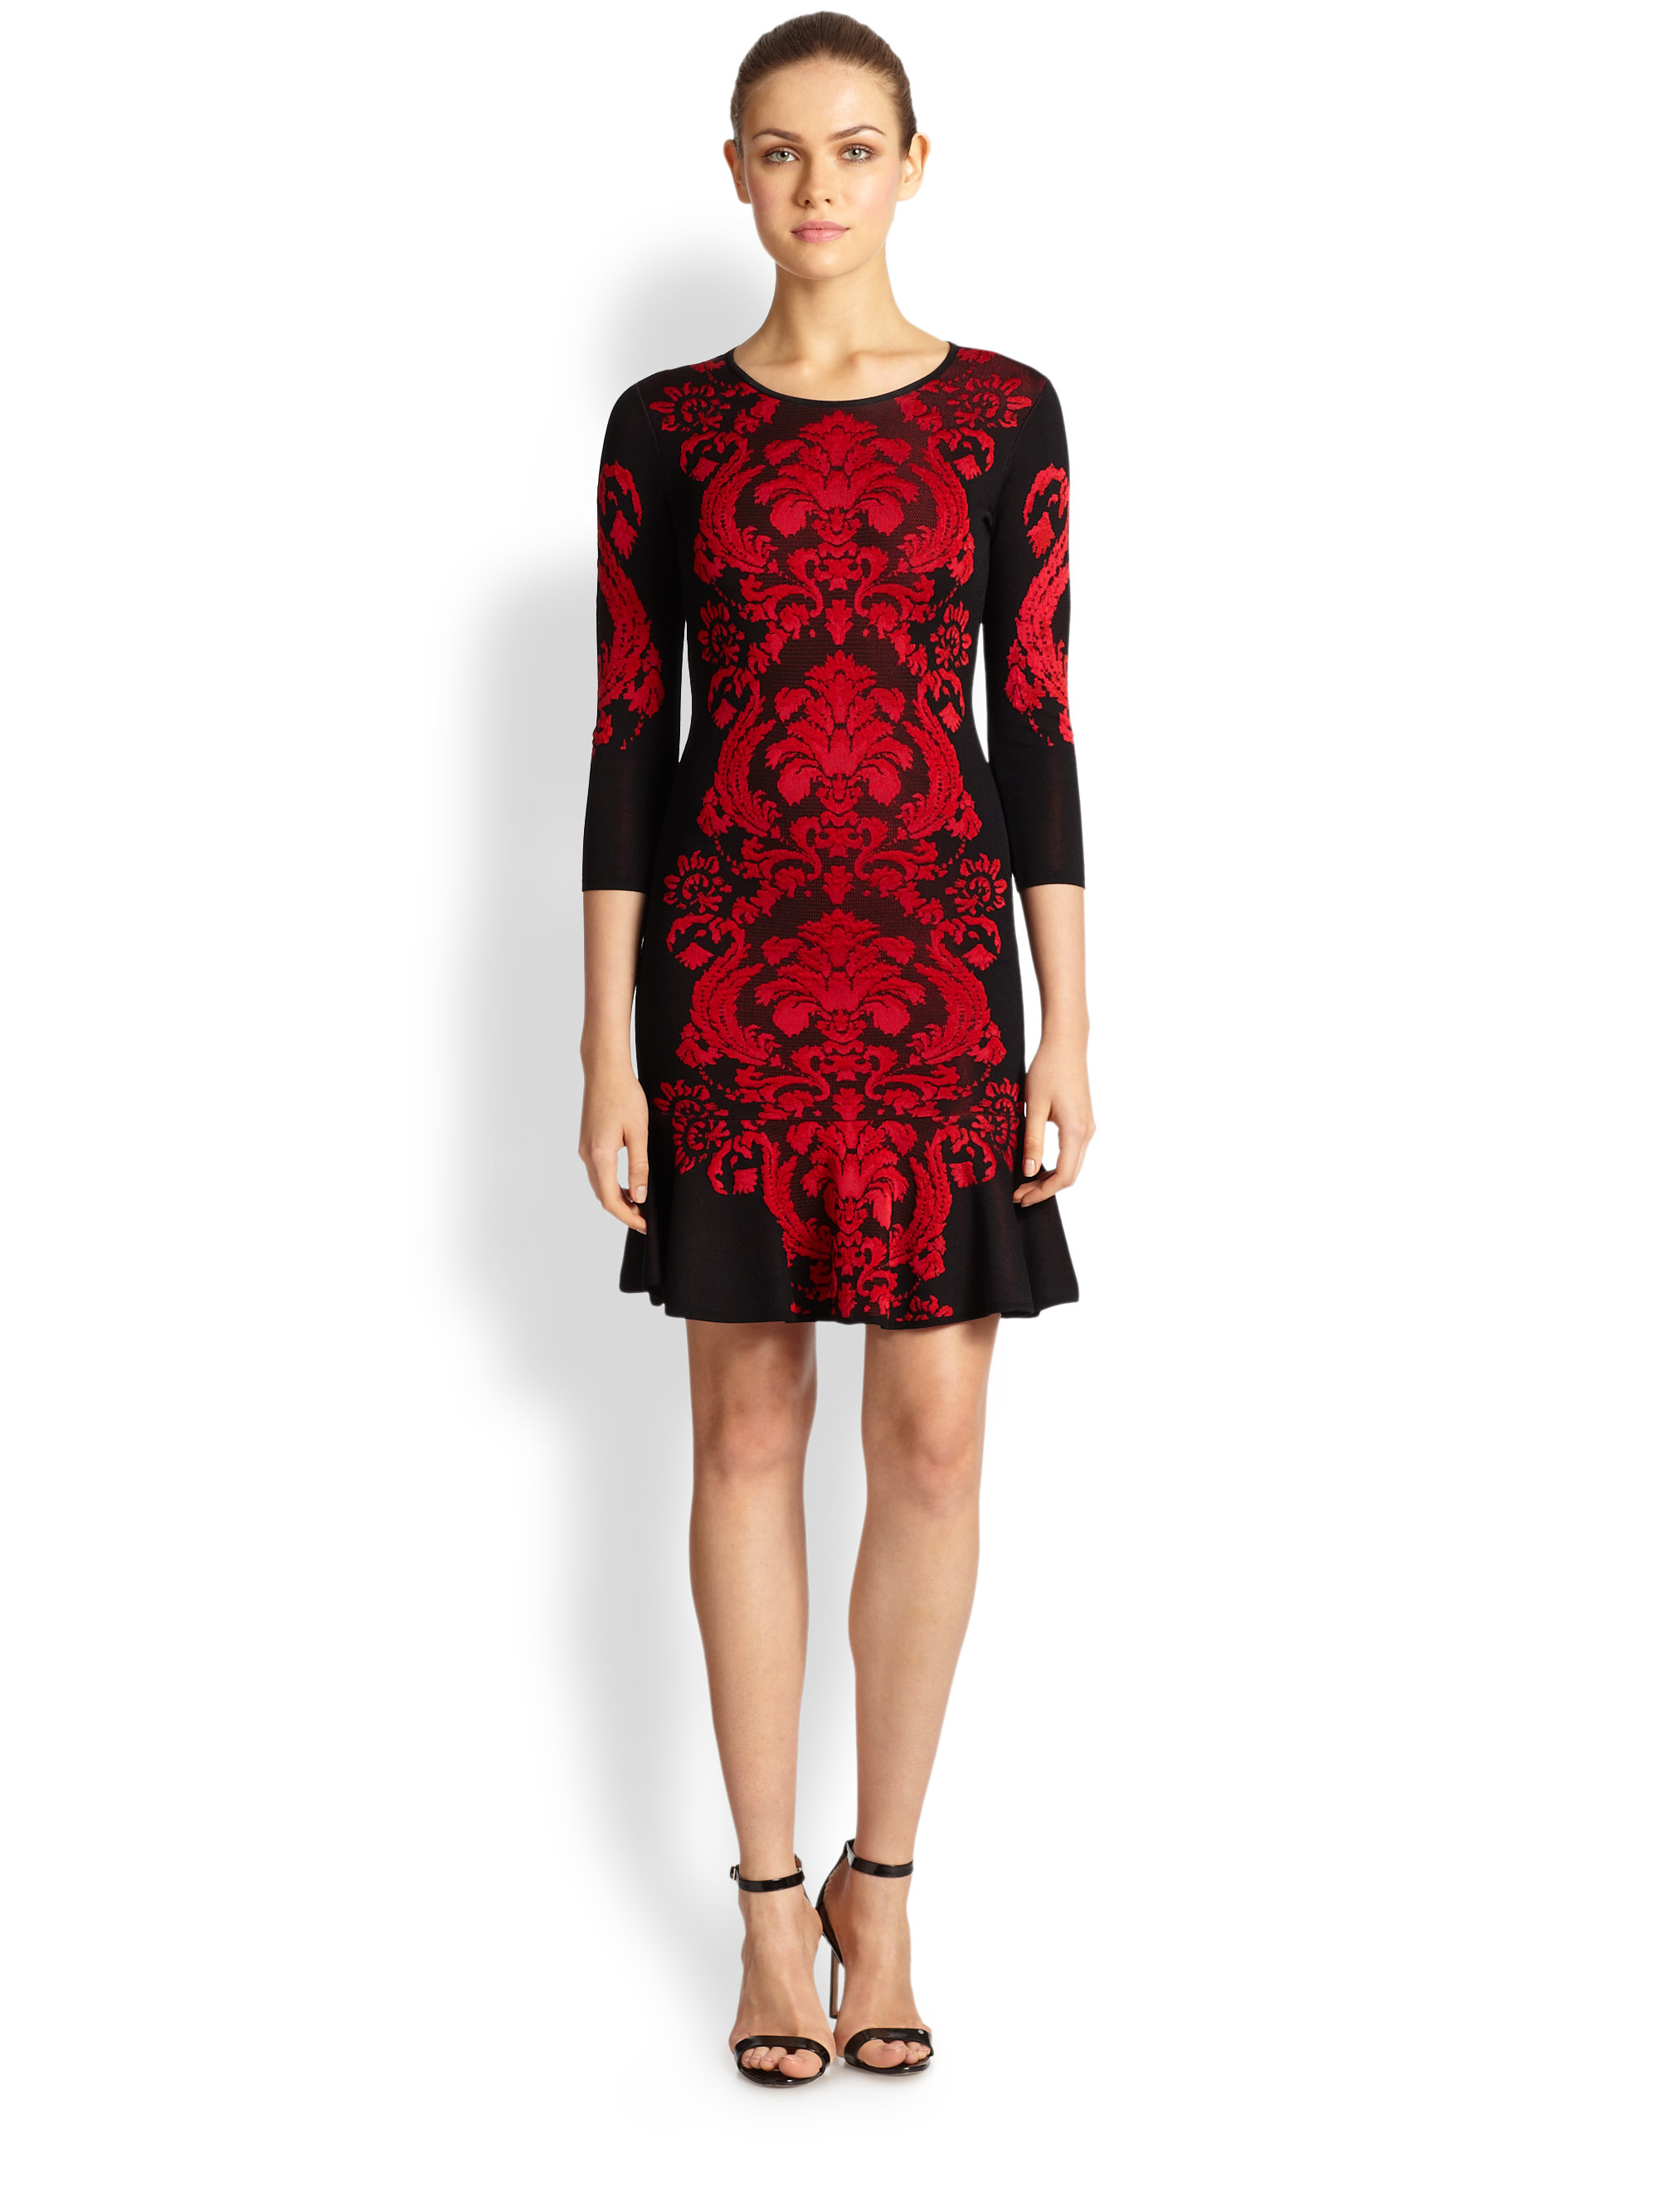 Lyst - Roberto Cavalli Jacquard Knit Dress in Red